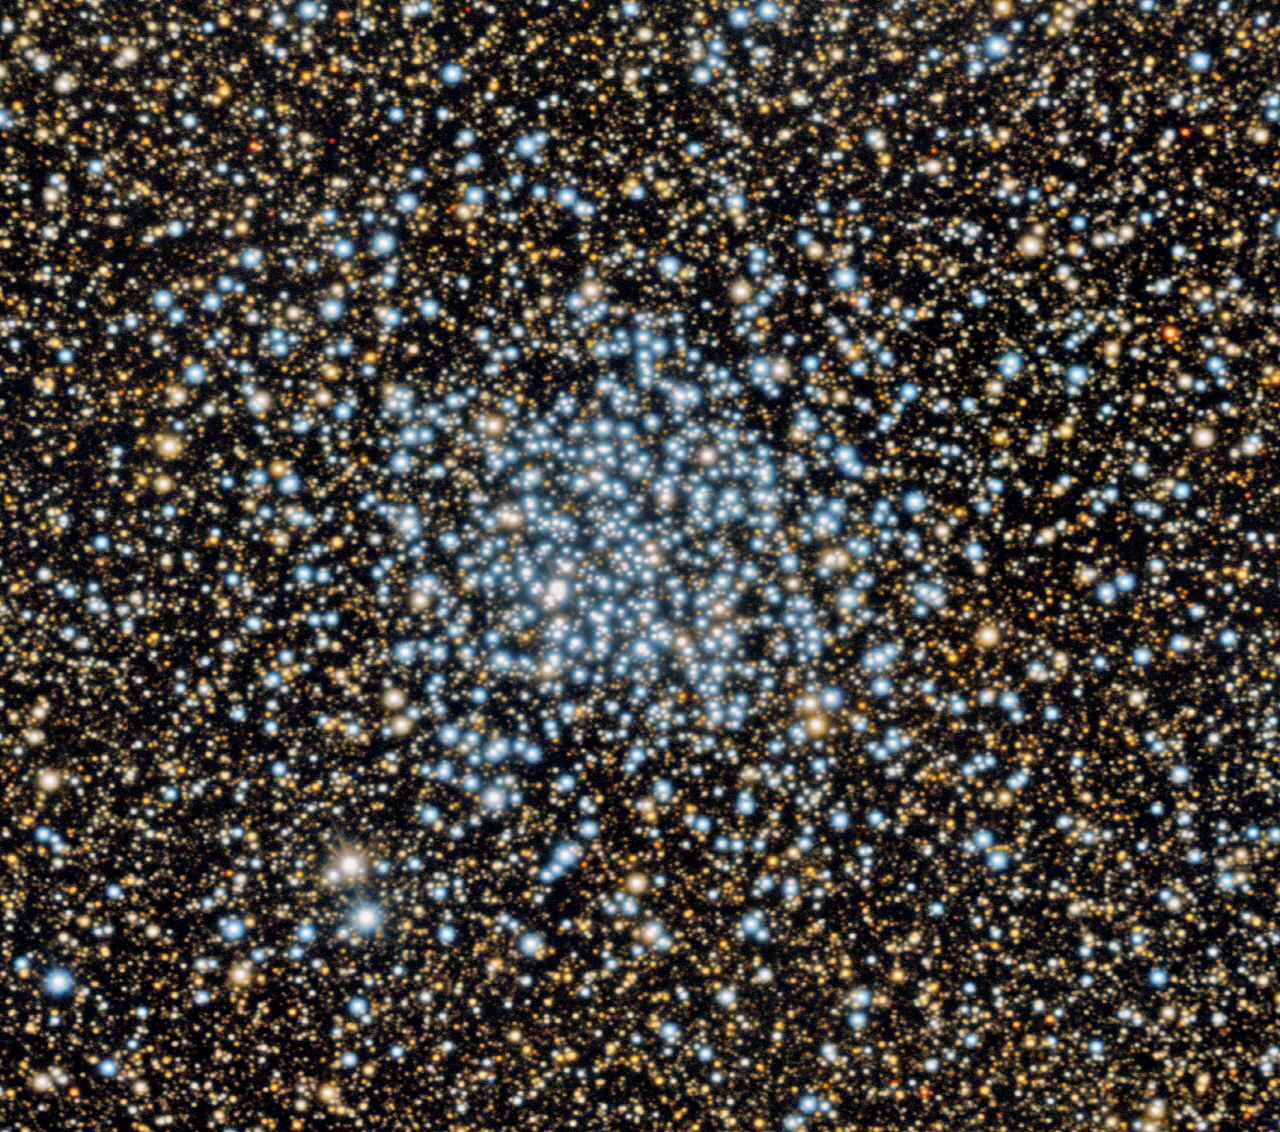 덕흥천문대 NYSC 1m 망원경으로 촬영한 야생오리 성단, 메시에 목록 11번. 별이 많이 밀집되어 있지는 않으며, 대부분 푸른 별들로 구성되어 있다. 주변의 어둡고 붉은 색의 별들은 우리 은하 중심 방향에 존재하는 배경 별들이다.